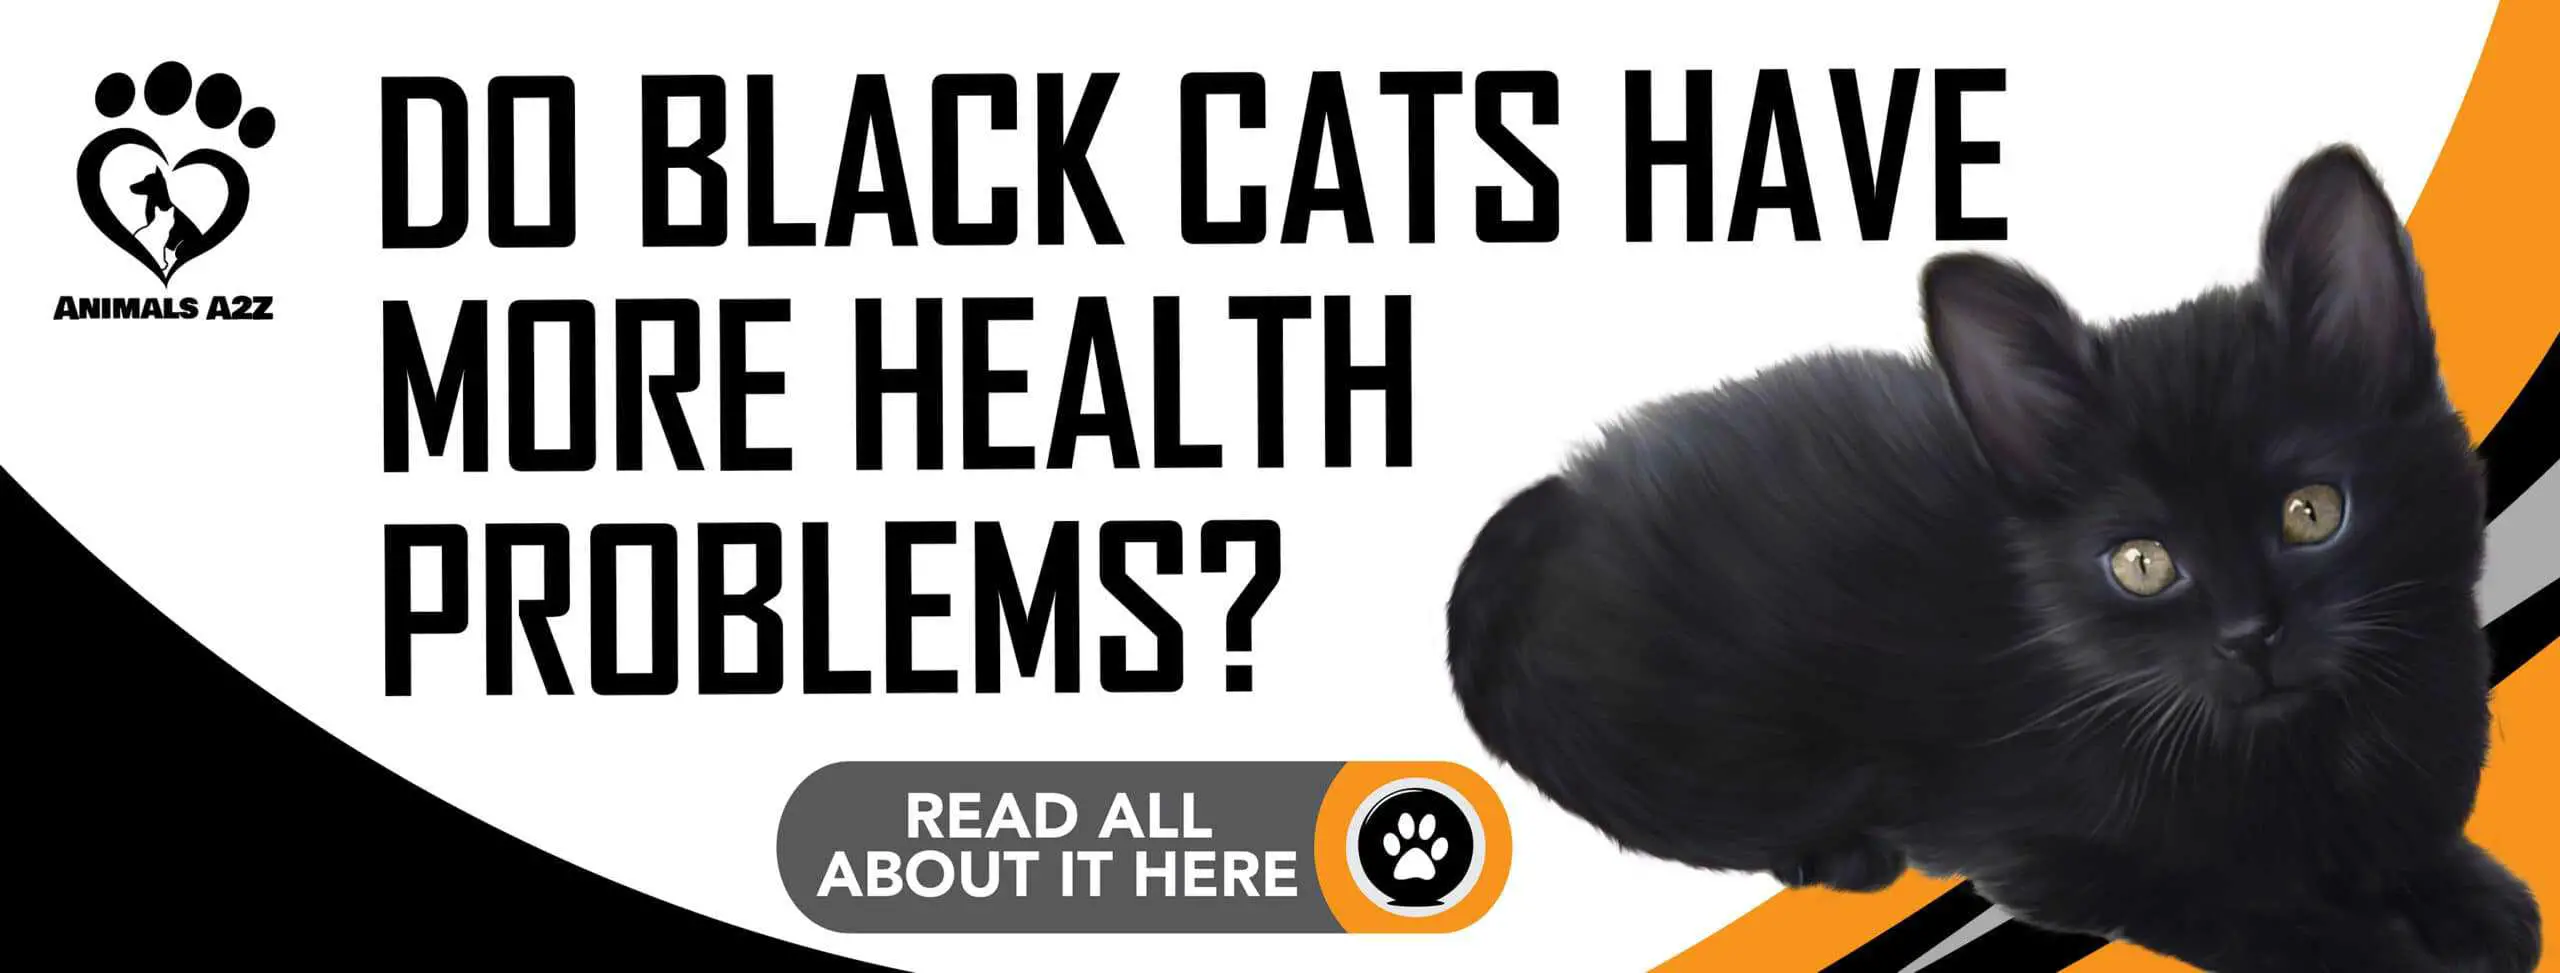 ¿Tienen los gatos negros más problemas de salud?